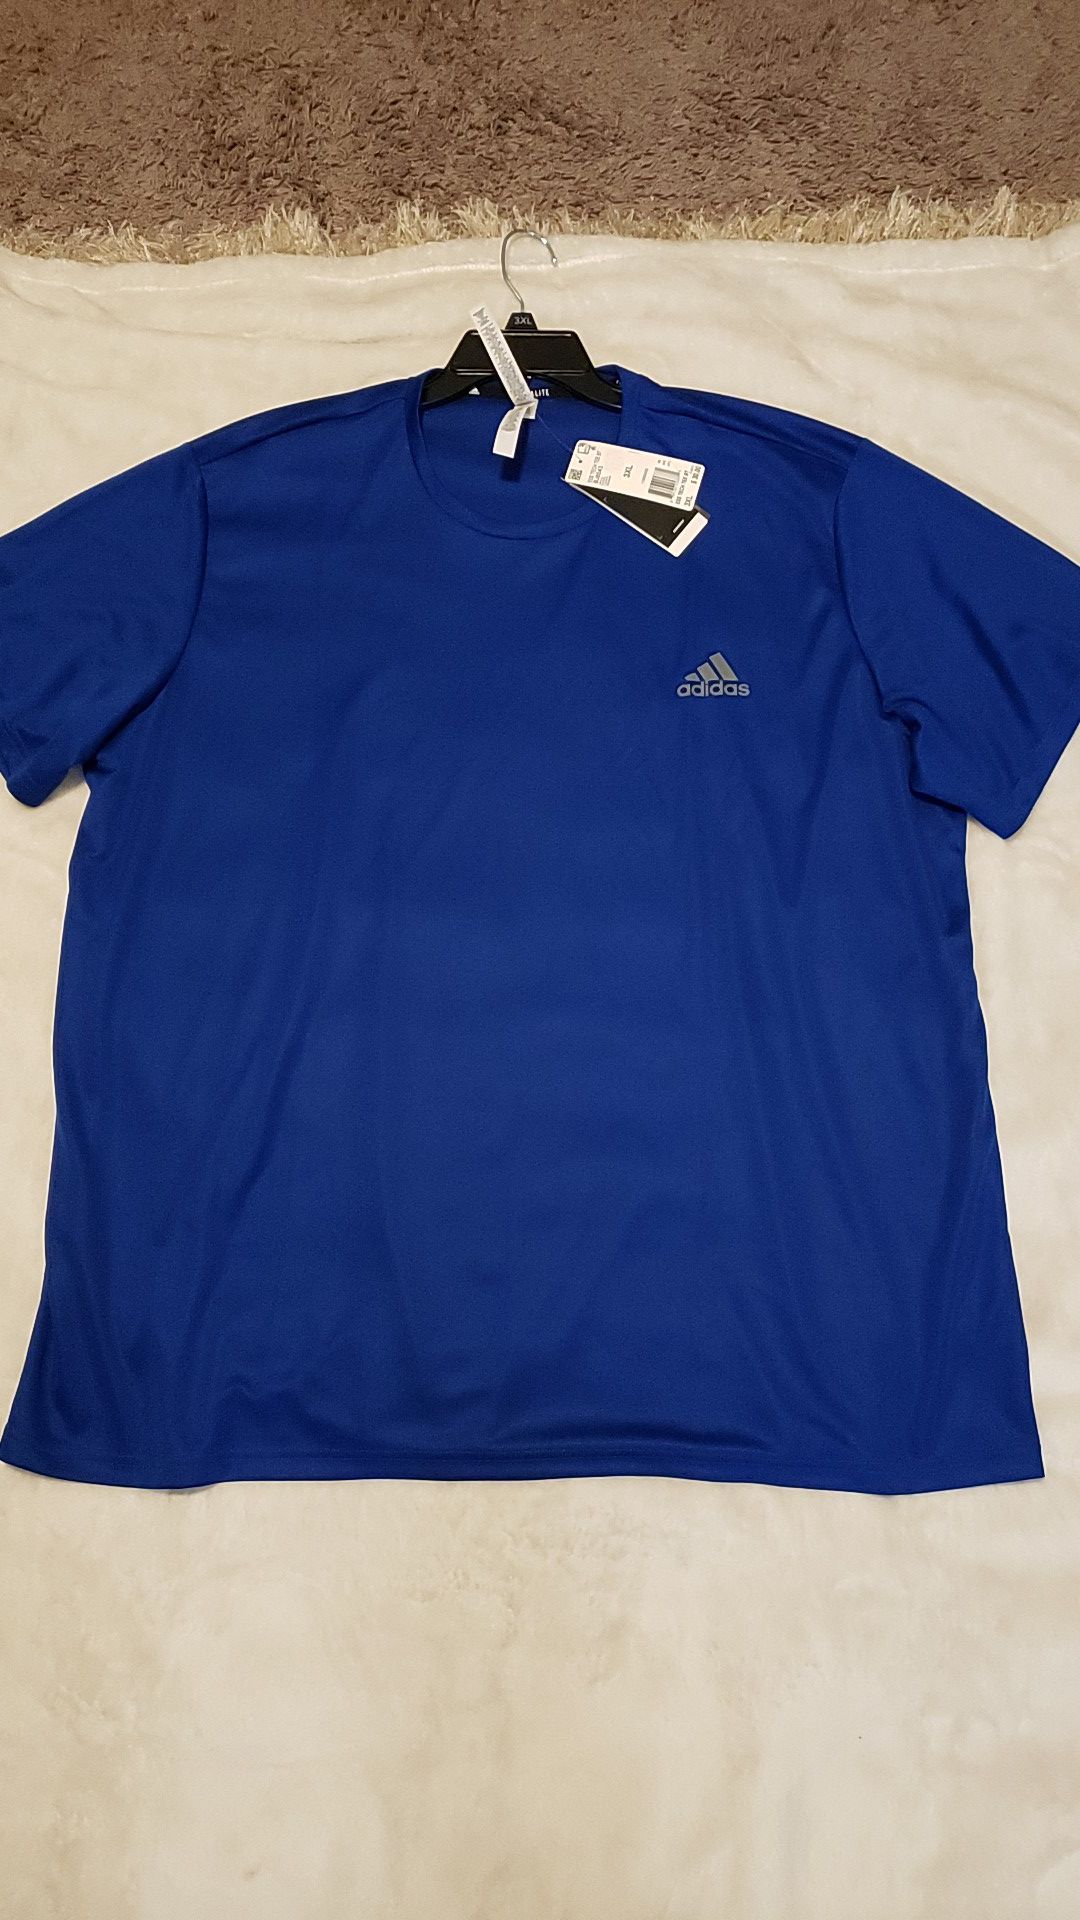 Royal blue Adidas tshirt